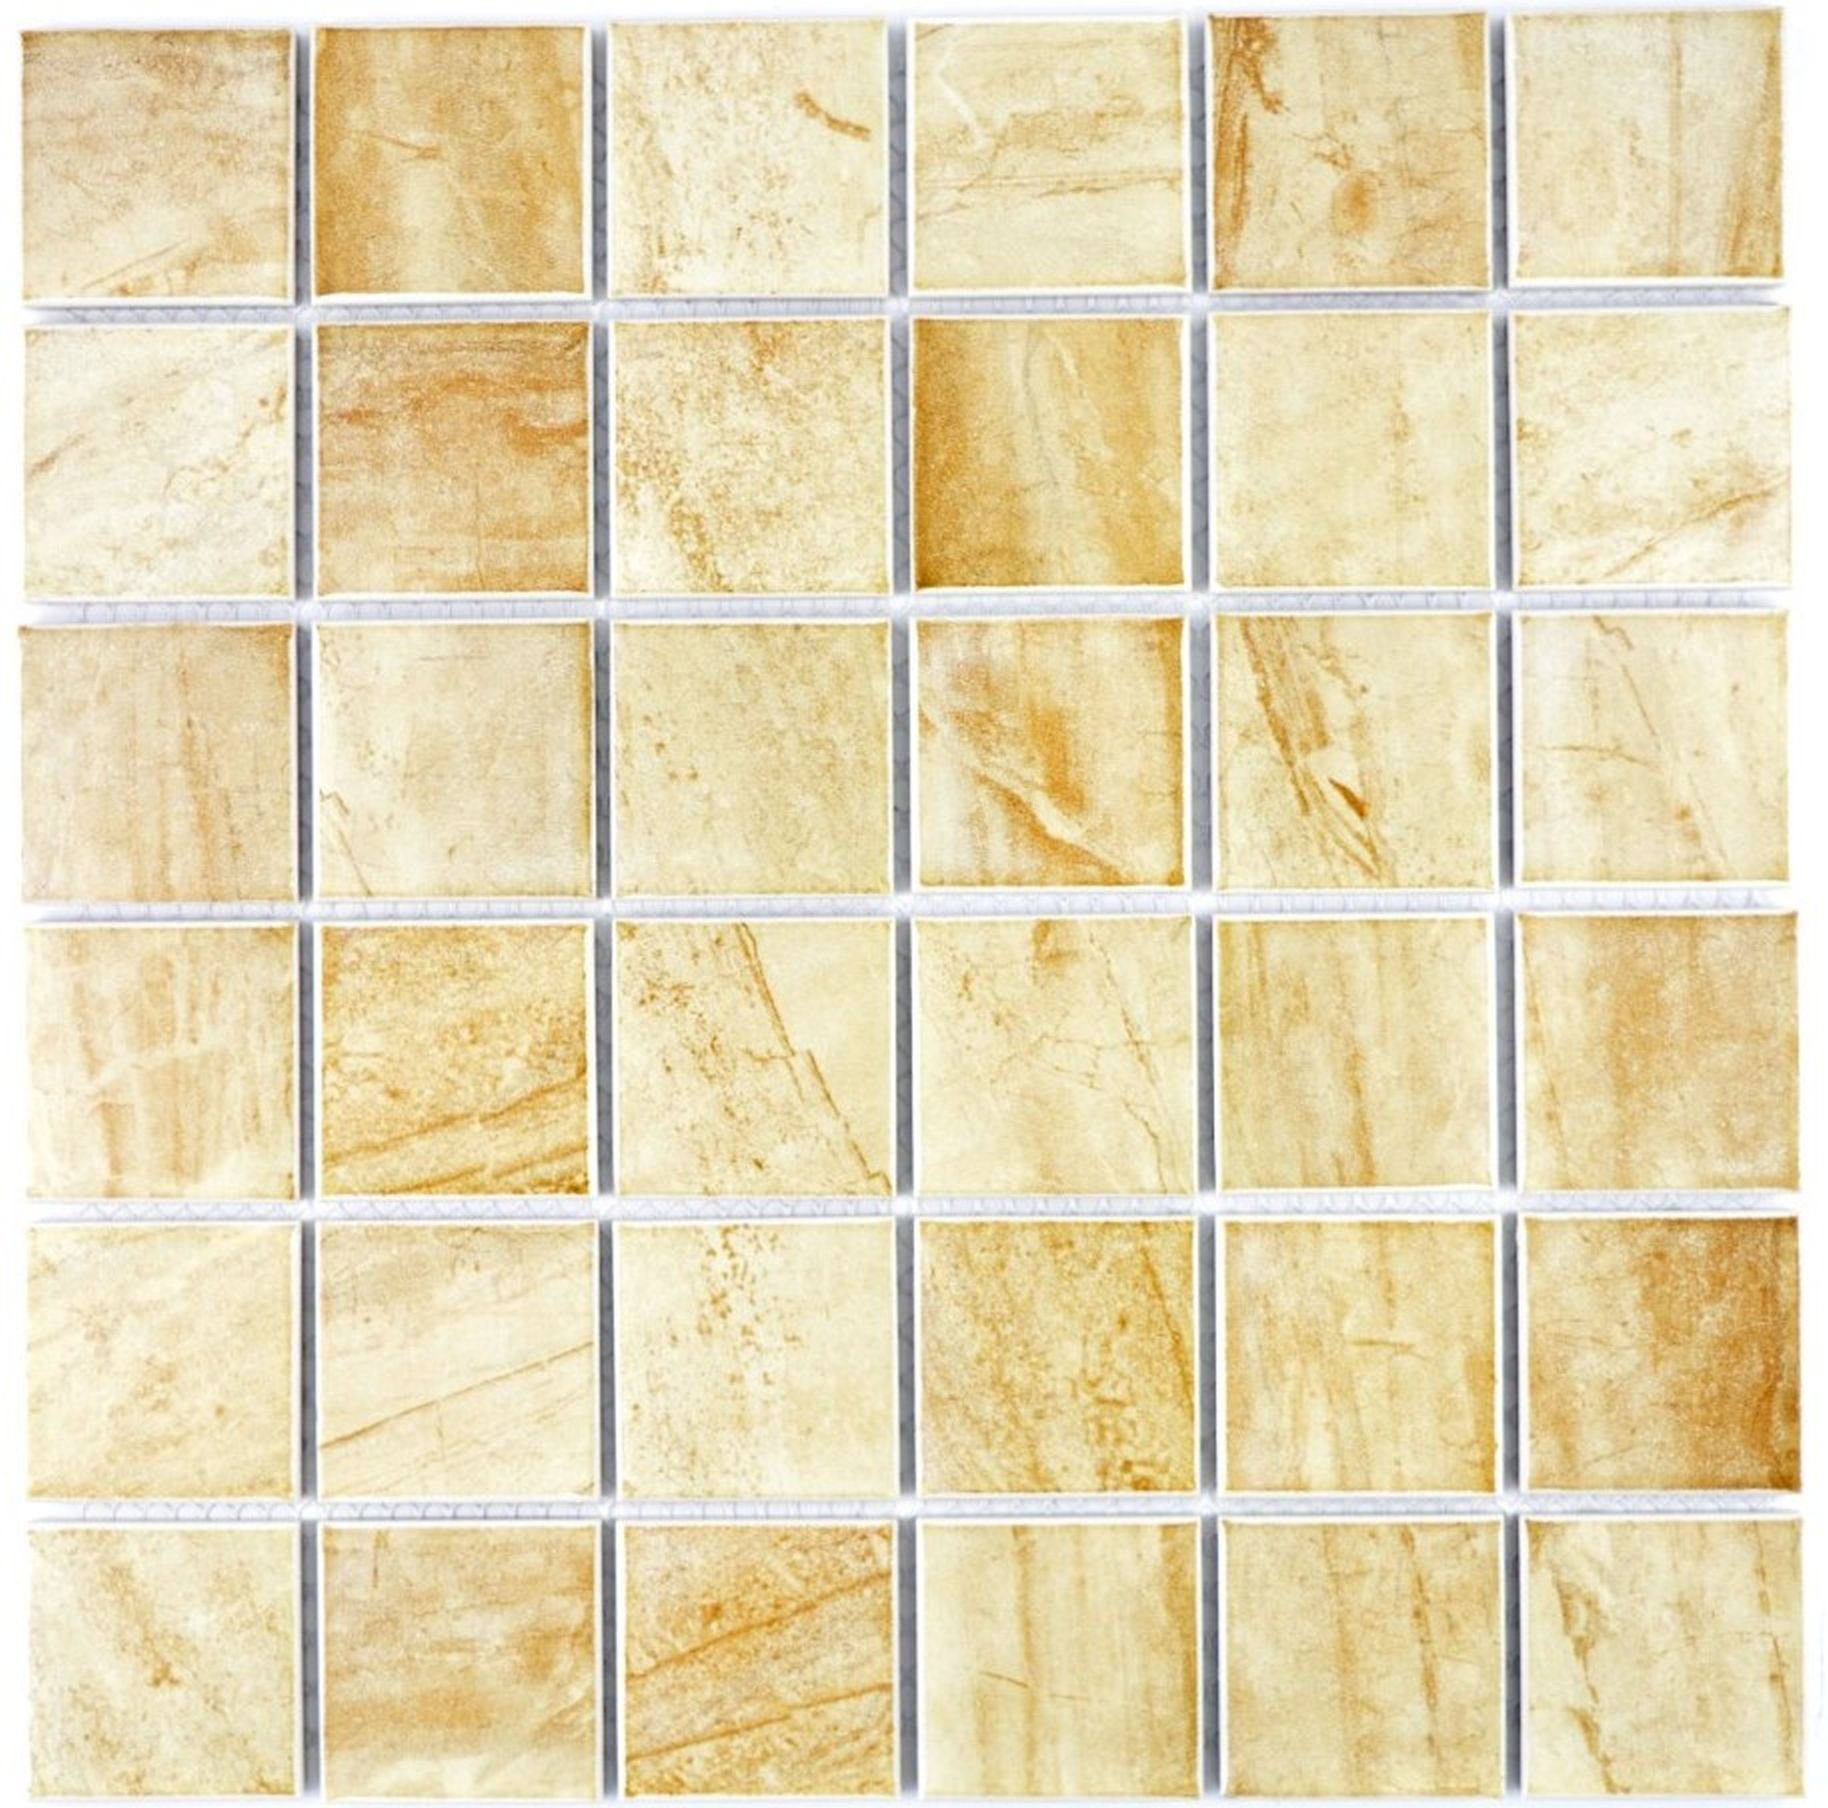 Travertin Mosaikfliesen Fliese Mosani Keramik Mosaik Natursteinoptik Struktur beige gelb